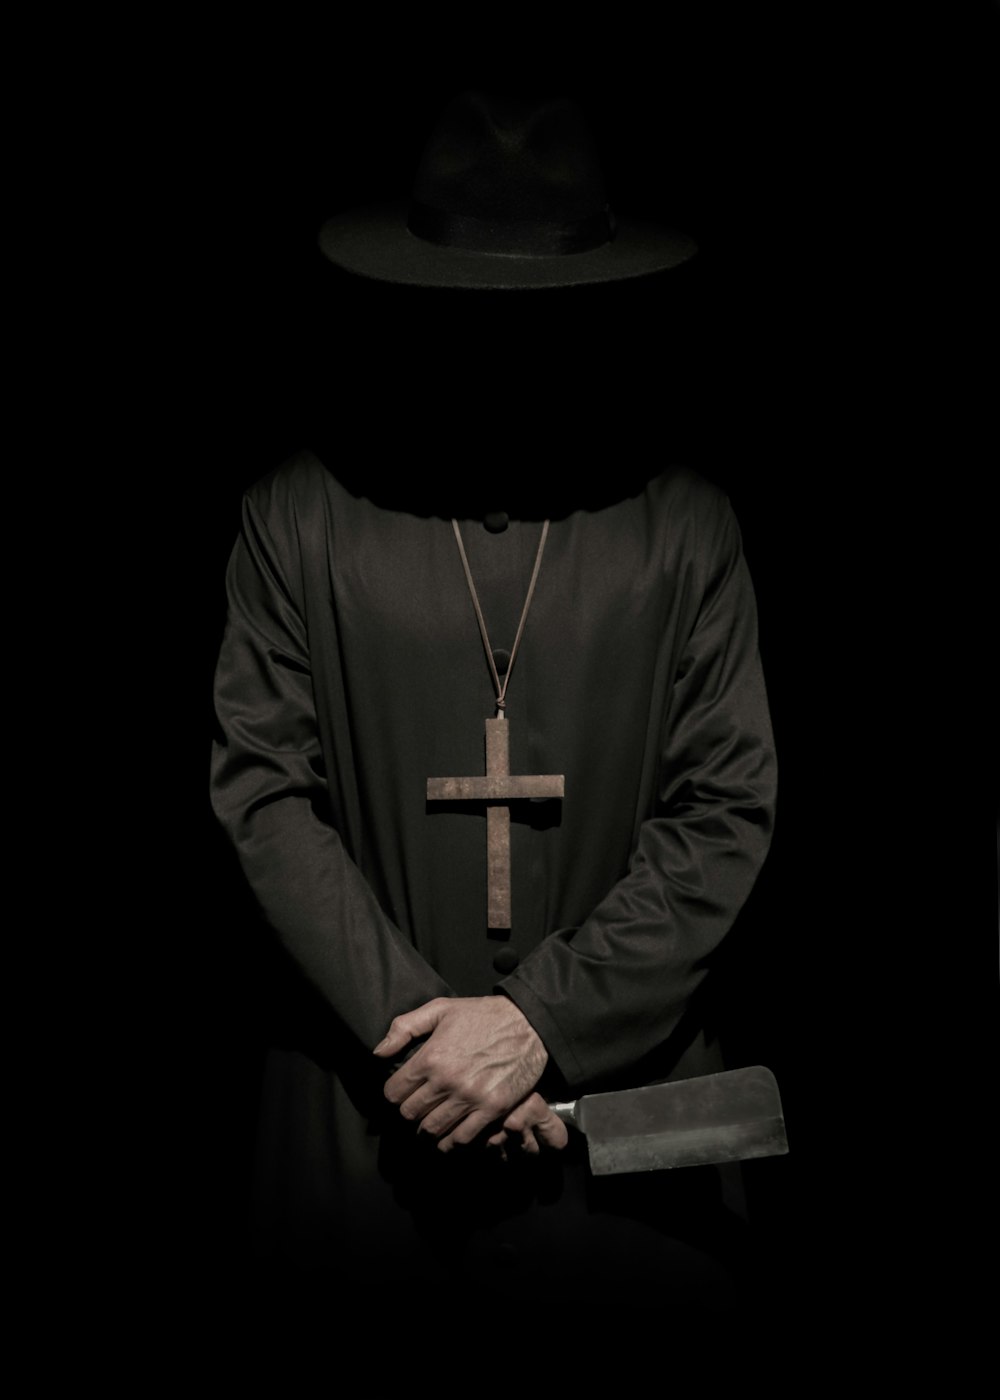 식칼을 들고 모자와 십자가 목걸이를 입고 서있는 사람